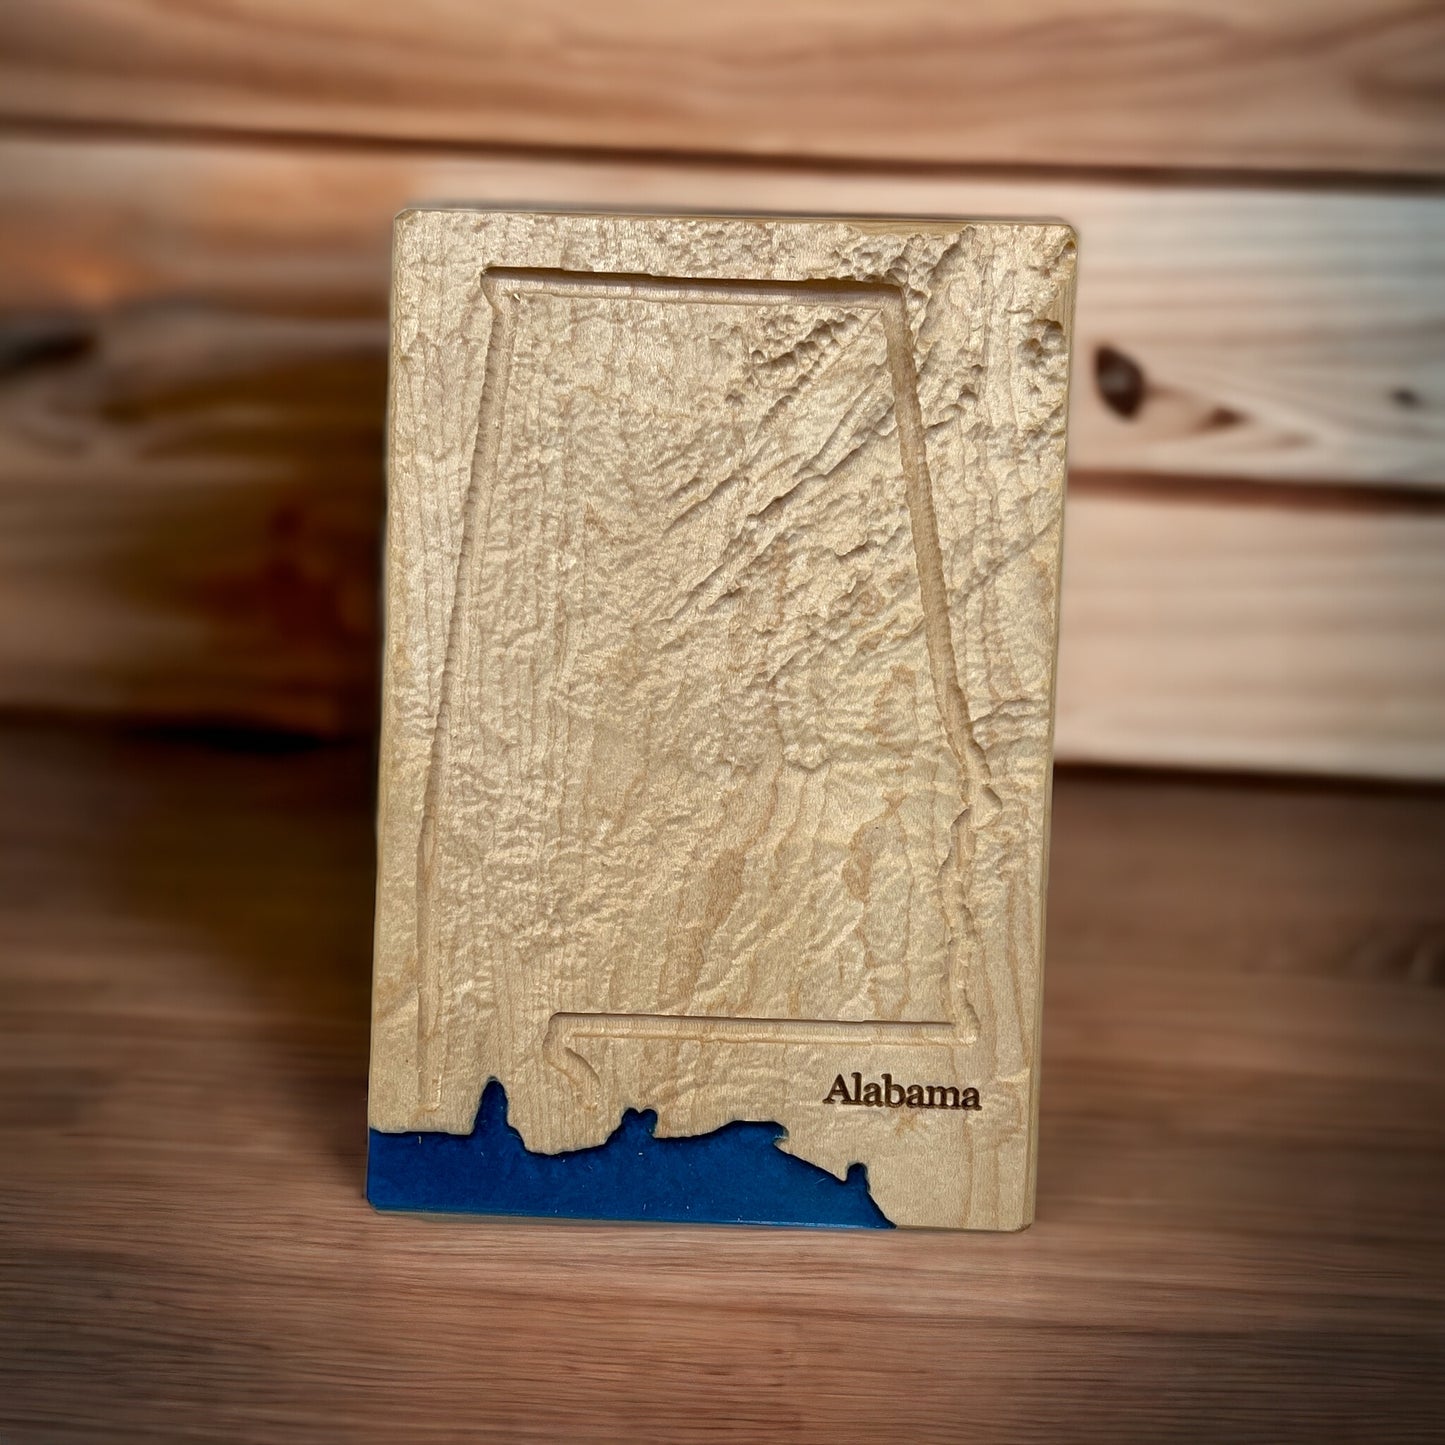 Alabama Map | Alabama Wood Carved Relief Map | Alabama Gift | Alabama Art | Alabama Home Decor | 3D Topographic Wood Map Alabama